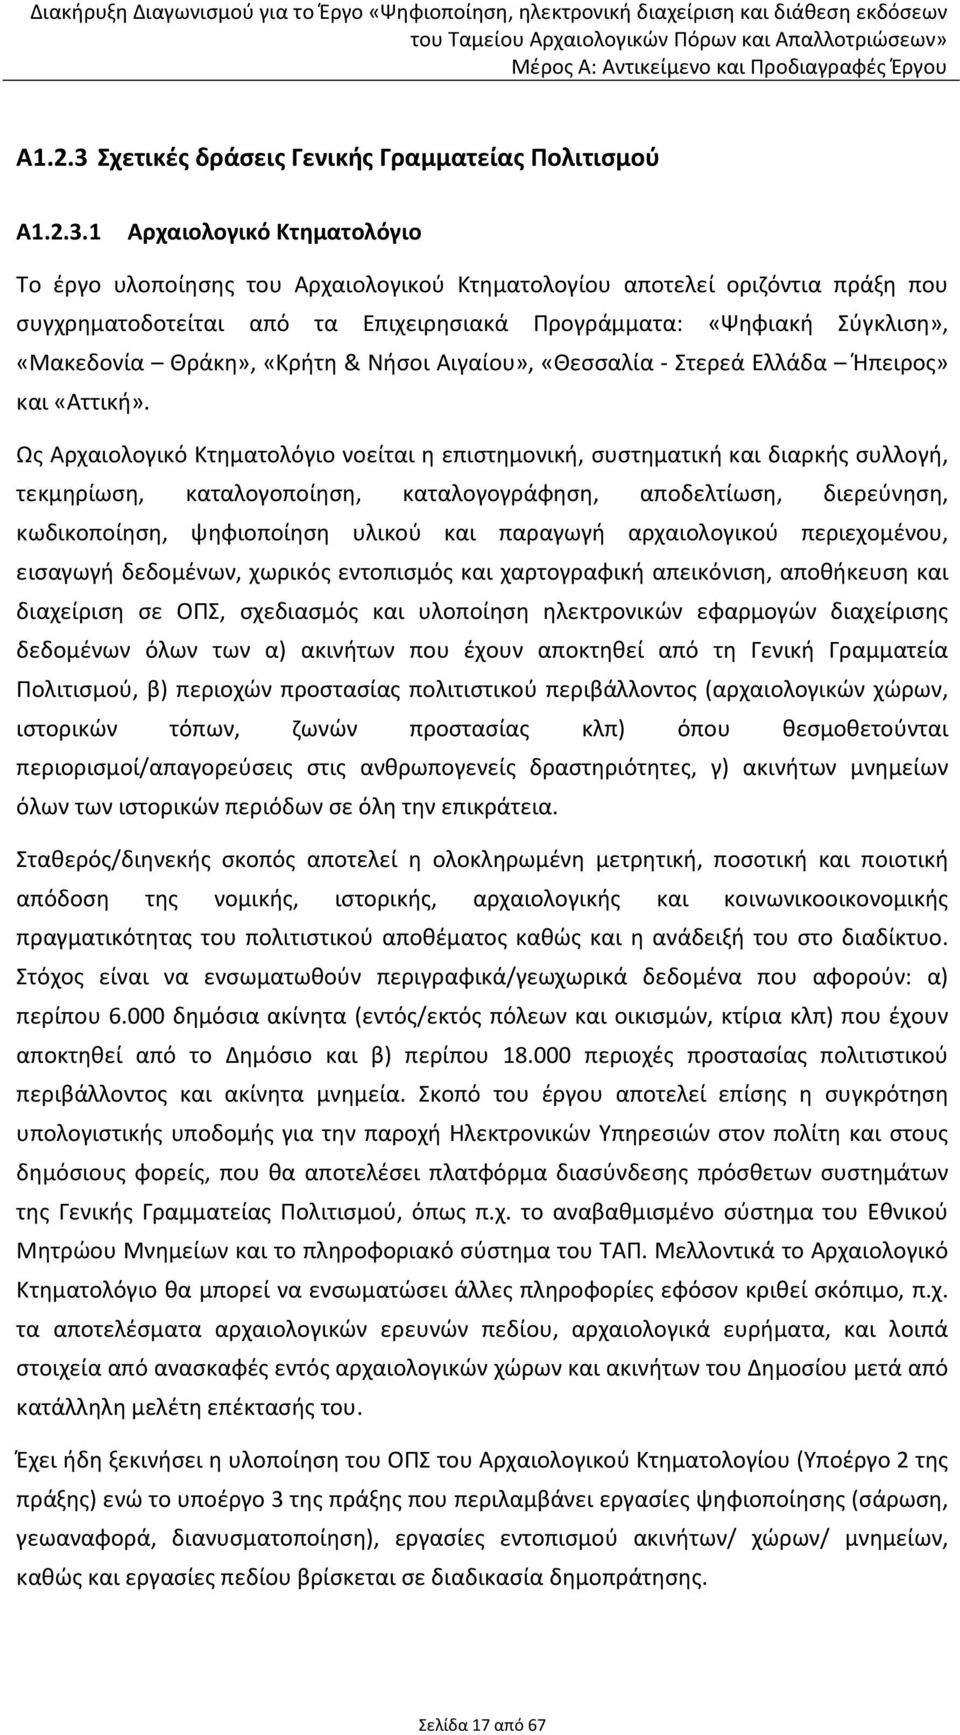 1 Αρχαιολογικό Κτηματολόγιο Το έργο υλοποίησης του Αρχαιολογικού Κτηματολογίου αποτελεί οριζόντια πράξη που συγχρηματοδοτείται από τα Επιχειρησιακά Προγράμματα: «Ψηφιακή Σύγκλιση», «Μακεδονία Θράκη»,